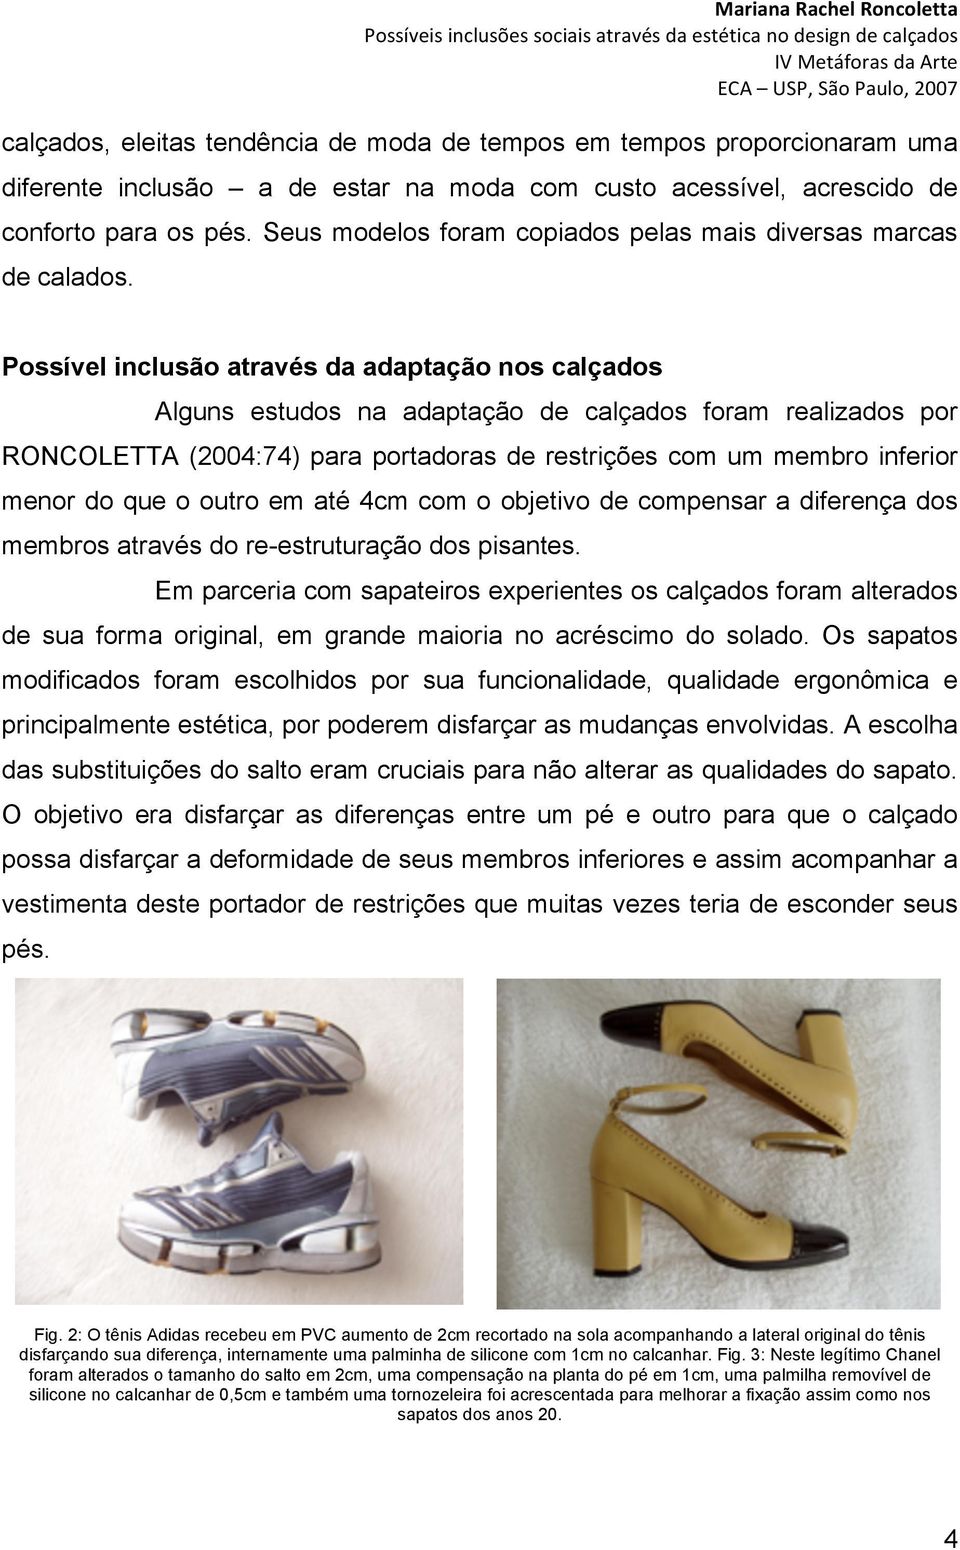 Possível inclusão através da adaptação nos calçados Alguns estudos na adaptação de calçados foram realizados por RONCOLETTA (2004:74) para portadoras de restrições com um membro inferior menor do que